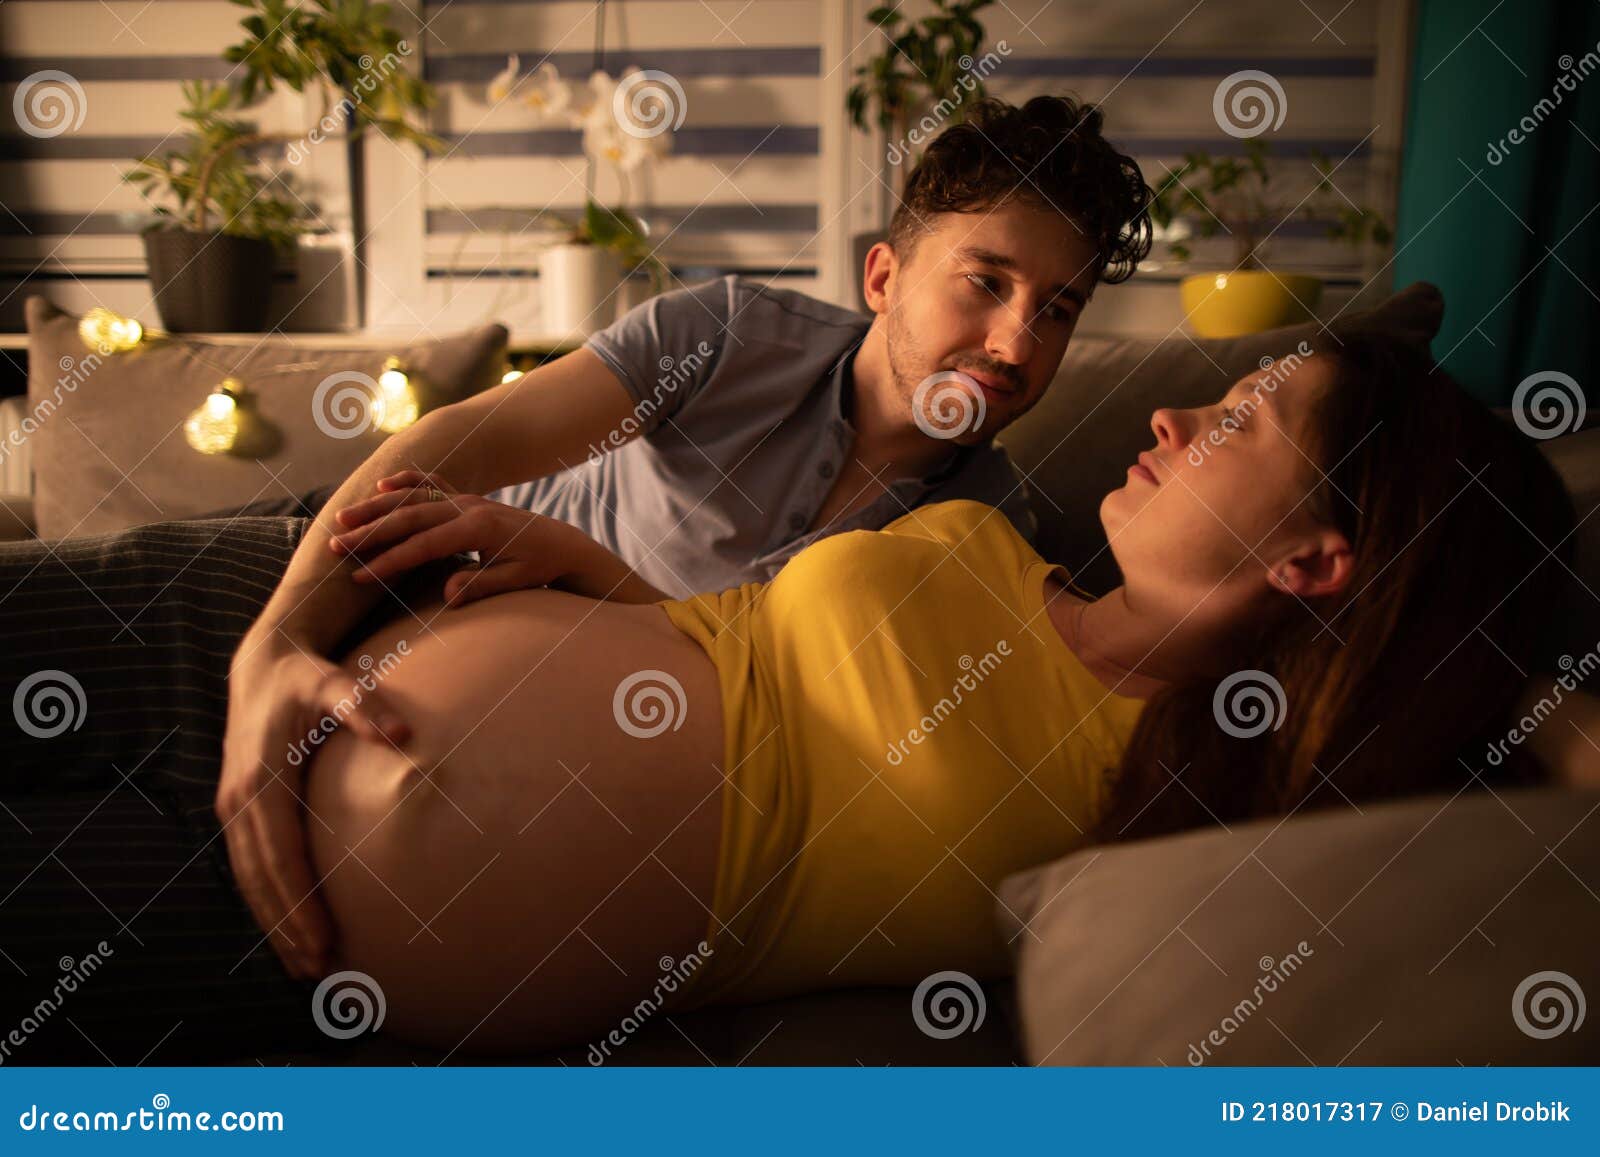 Сонник жена с другом. Муж обнимает беременную жену. Муж обнимает супругу. Муж обнимает жену в кровати. Лежим на кровати с женой с беременной.